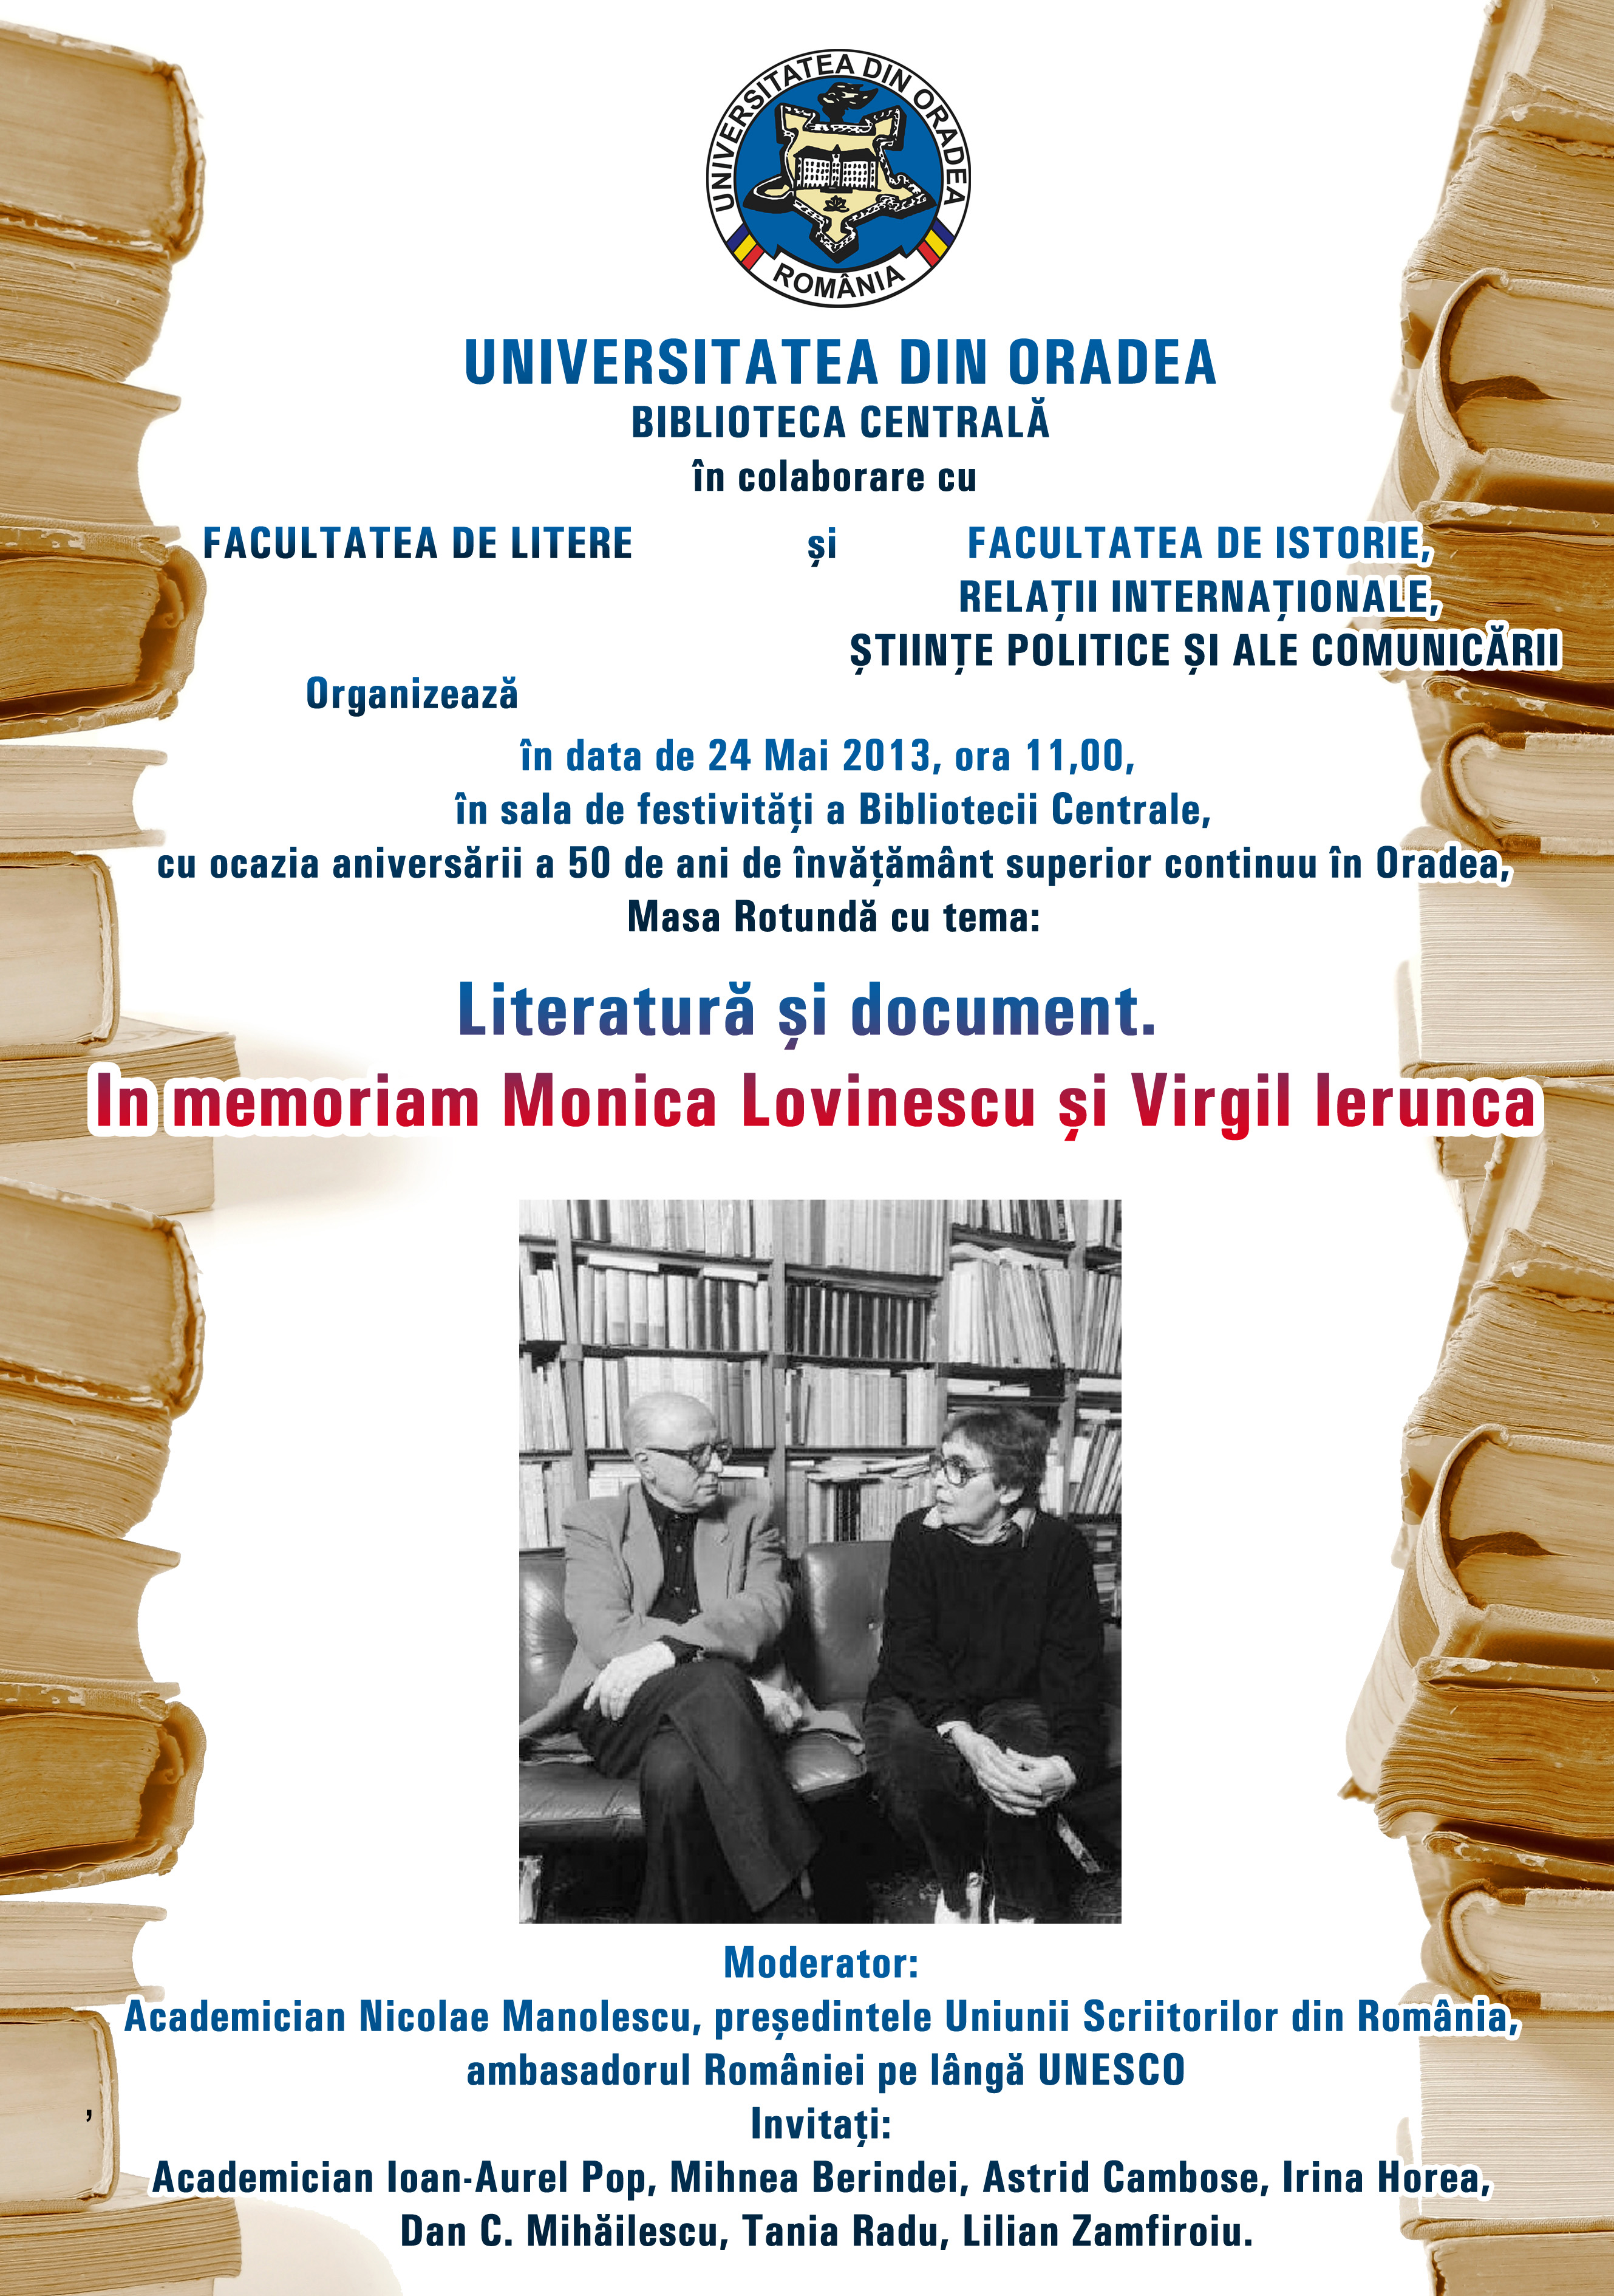 Afiș anunțând masa rotundă “Literatură și document” în memoriam Monica Lovinescu și Virgil Ierunca, 24 mai, 2013 la Biblioteca Universității din Oradea